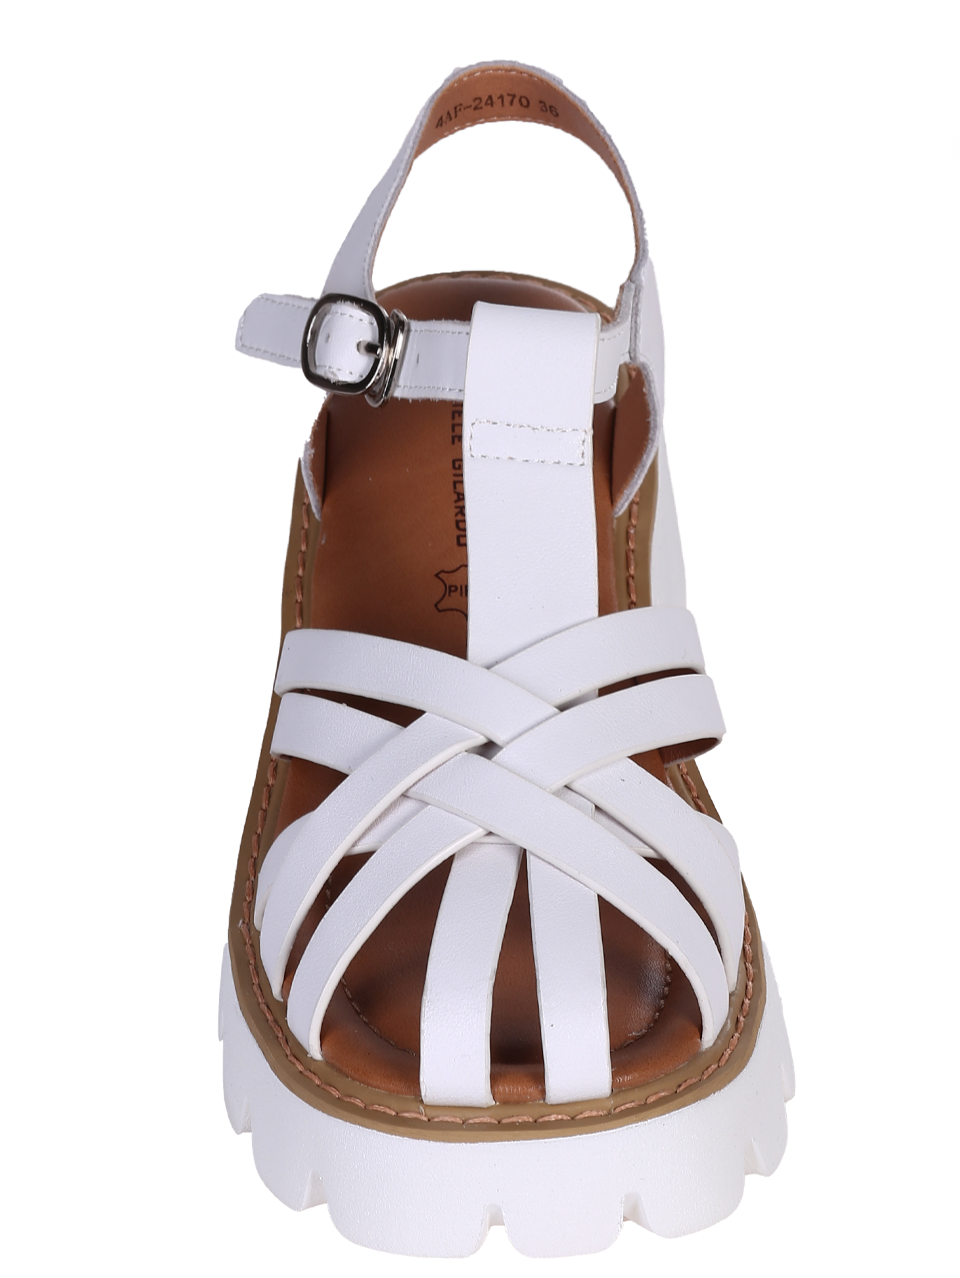 Ежедневни дамски сандали на ток в бяло 4AF-24170 white